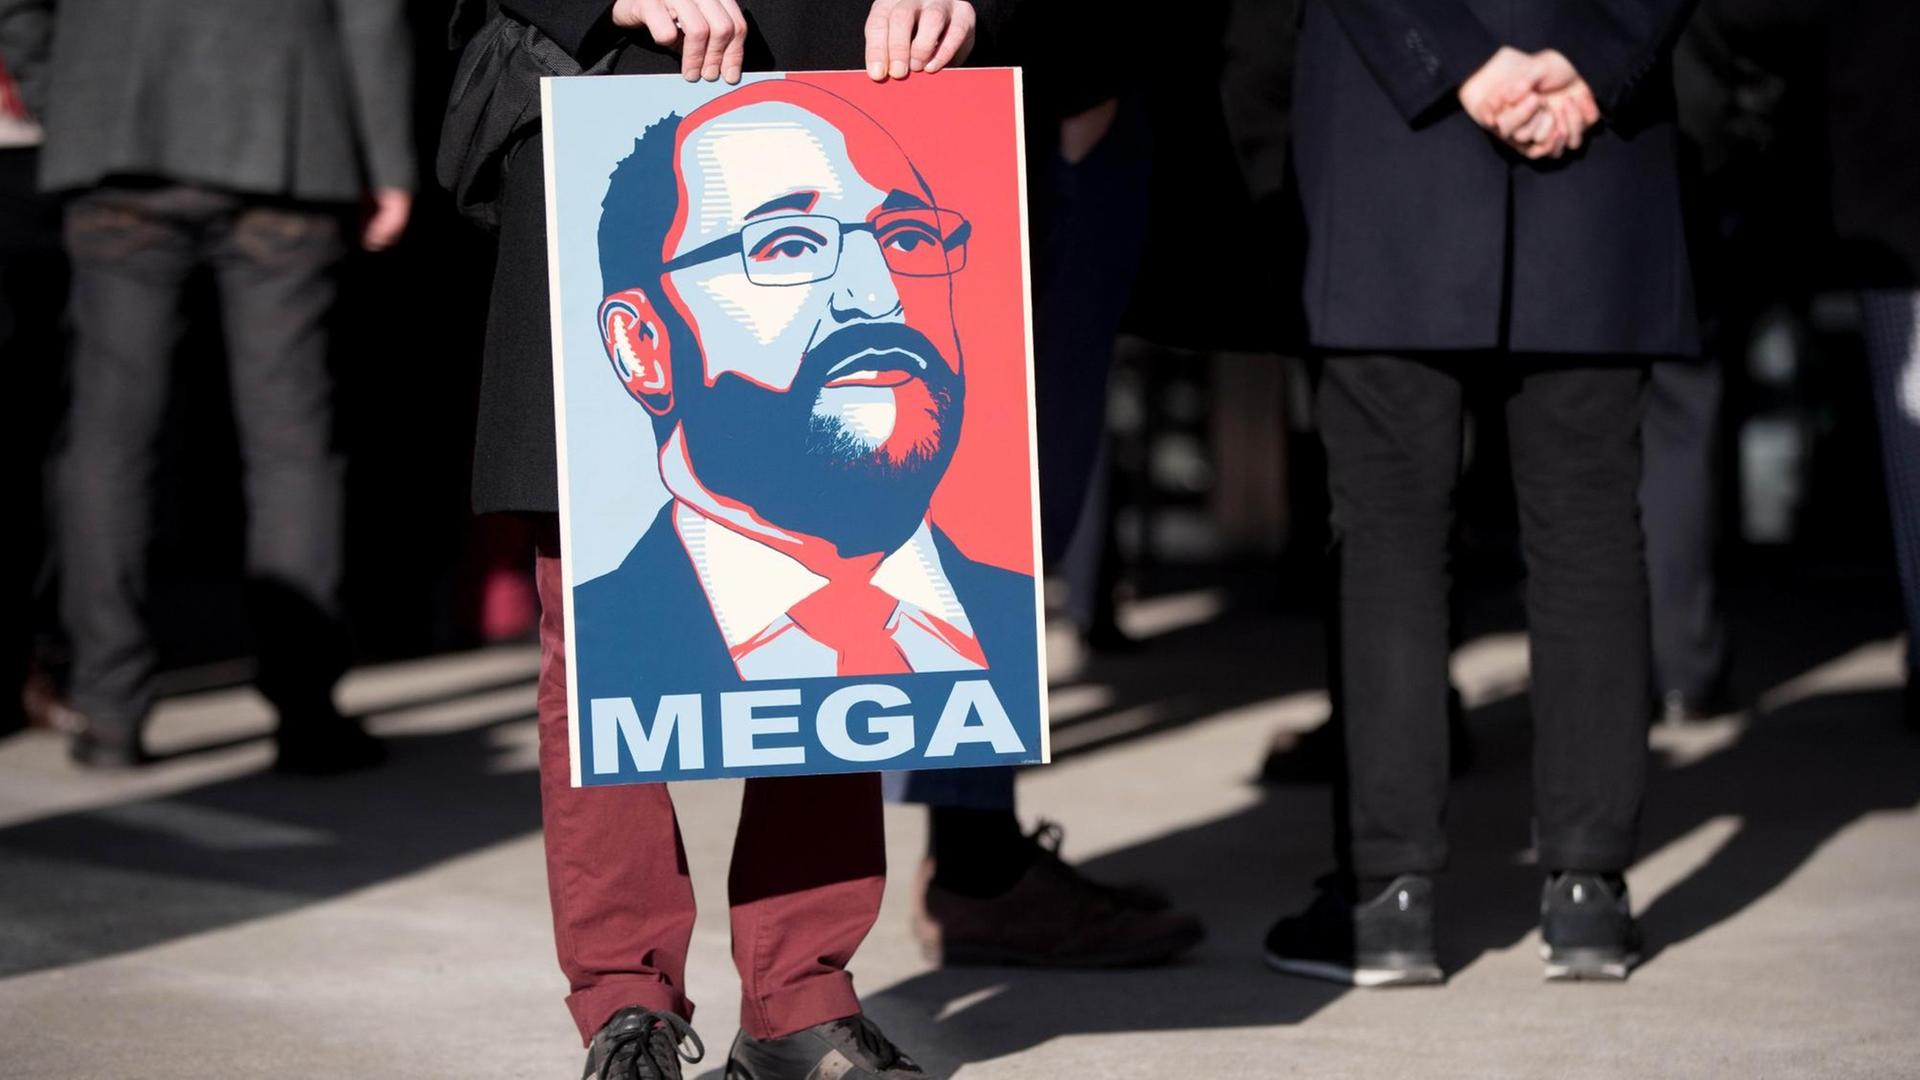 Ein SPD-Parteianhänger hält ein Plakat mit einem Bild des SPD-Kanzlerkandidaten Martin Schulz und der Aufschrift "Mega".